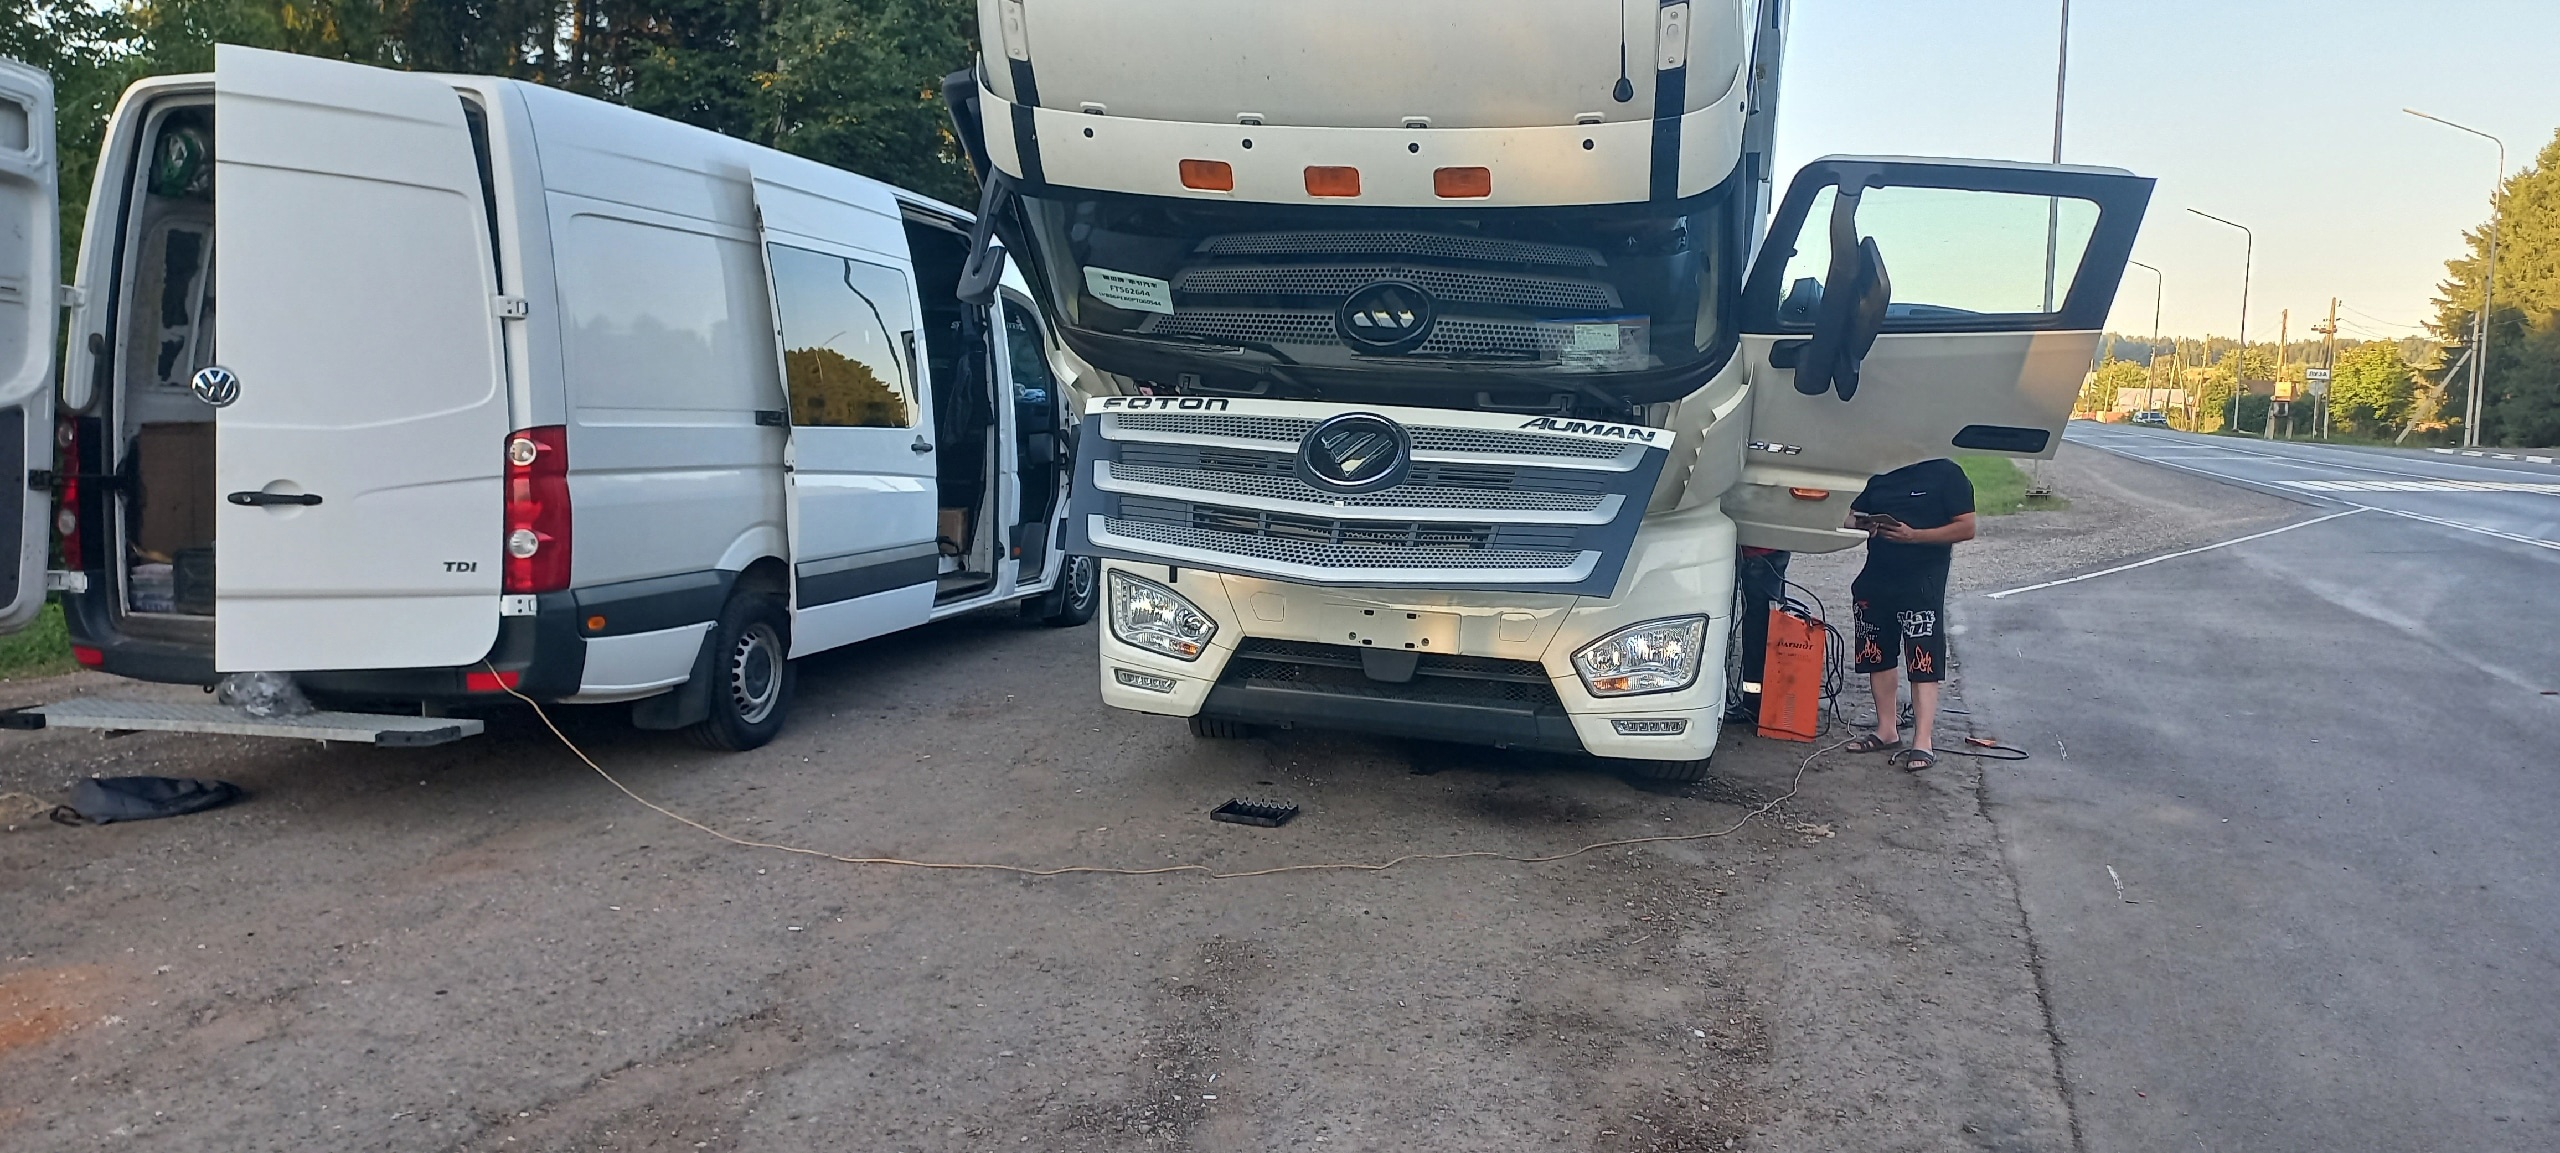 Не крутит стартер грузовика в Омутнинске